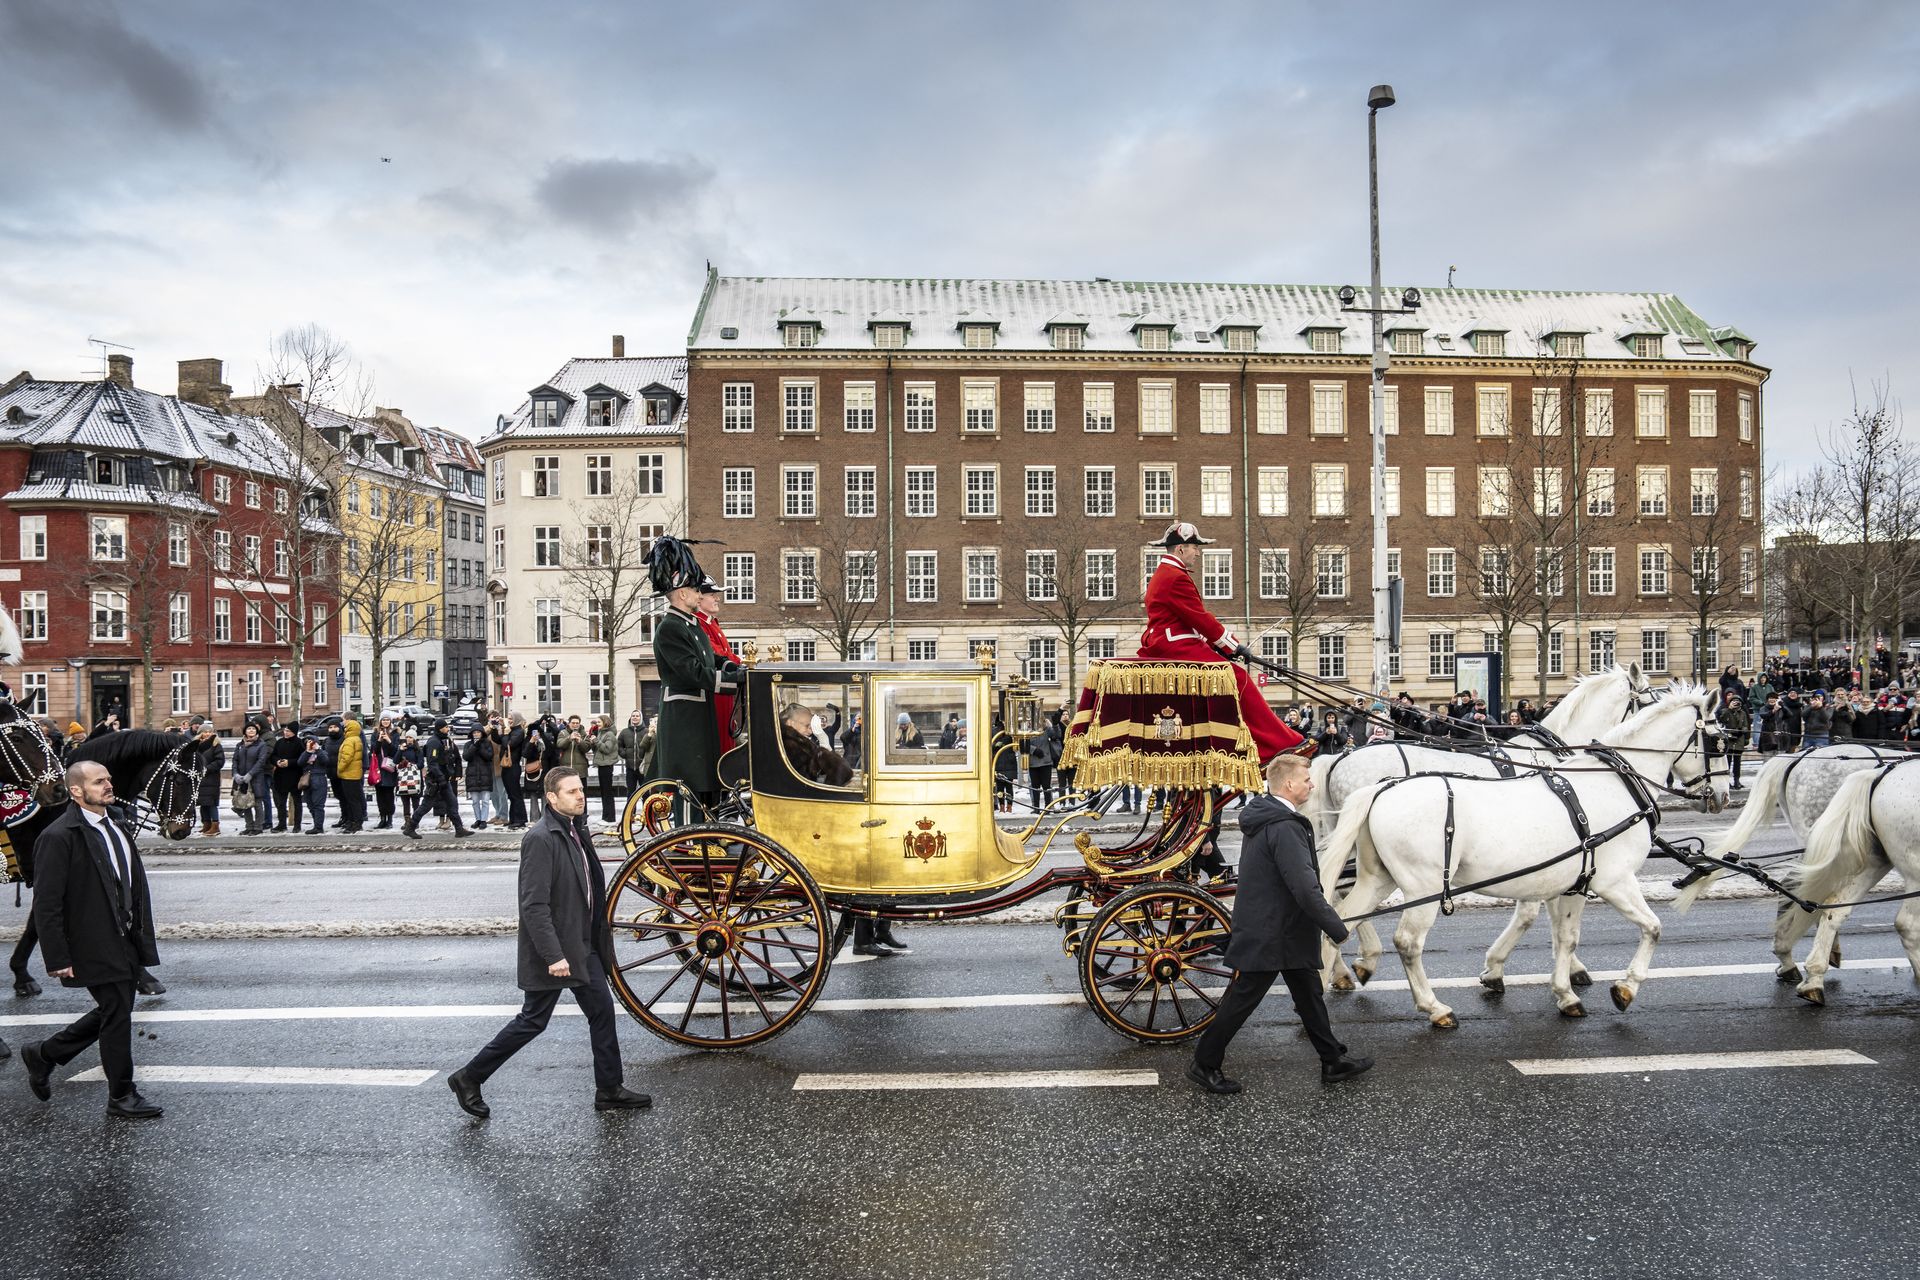 Koningin Margrethe vertrekt voor de laatste keer als koningin in de gouden koets voor haar traditionele nieuwjaarsrit van paleis Amalienborg naar paleis Christiansborg op 4 januari.